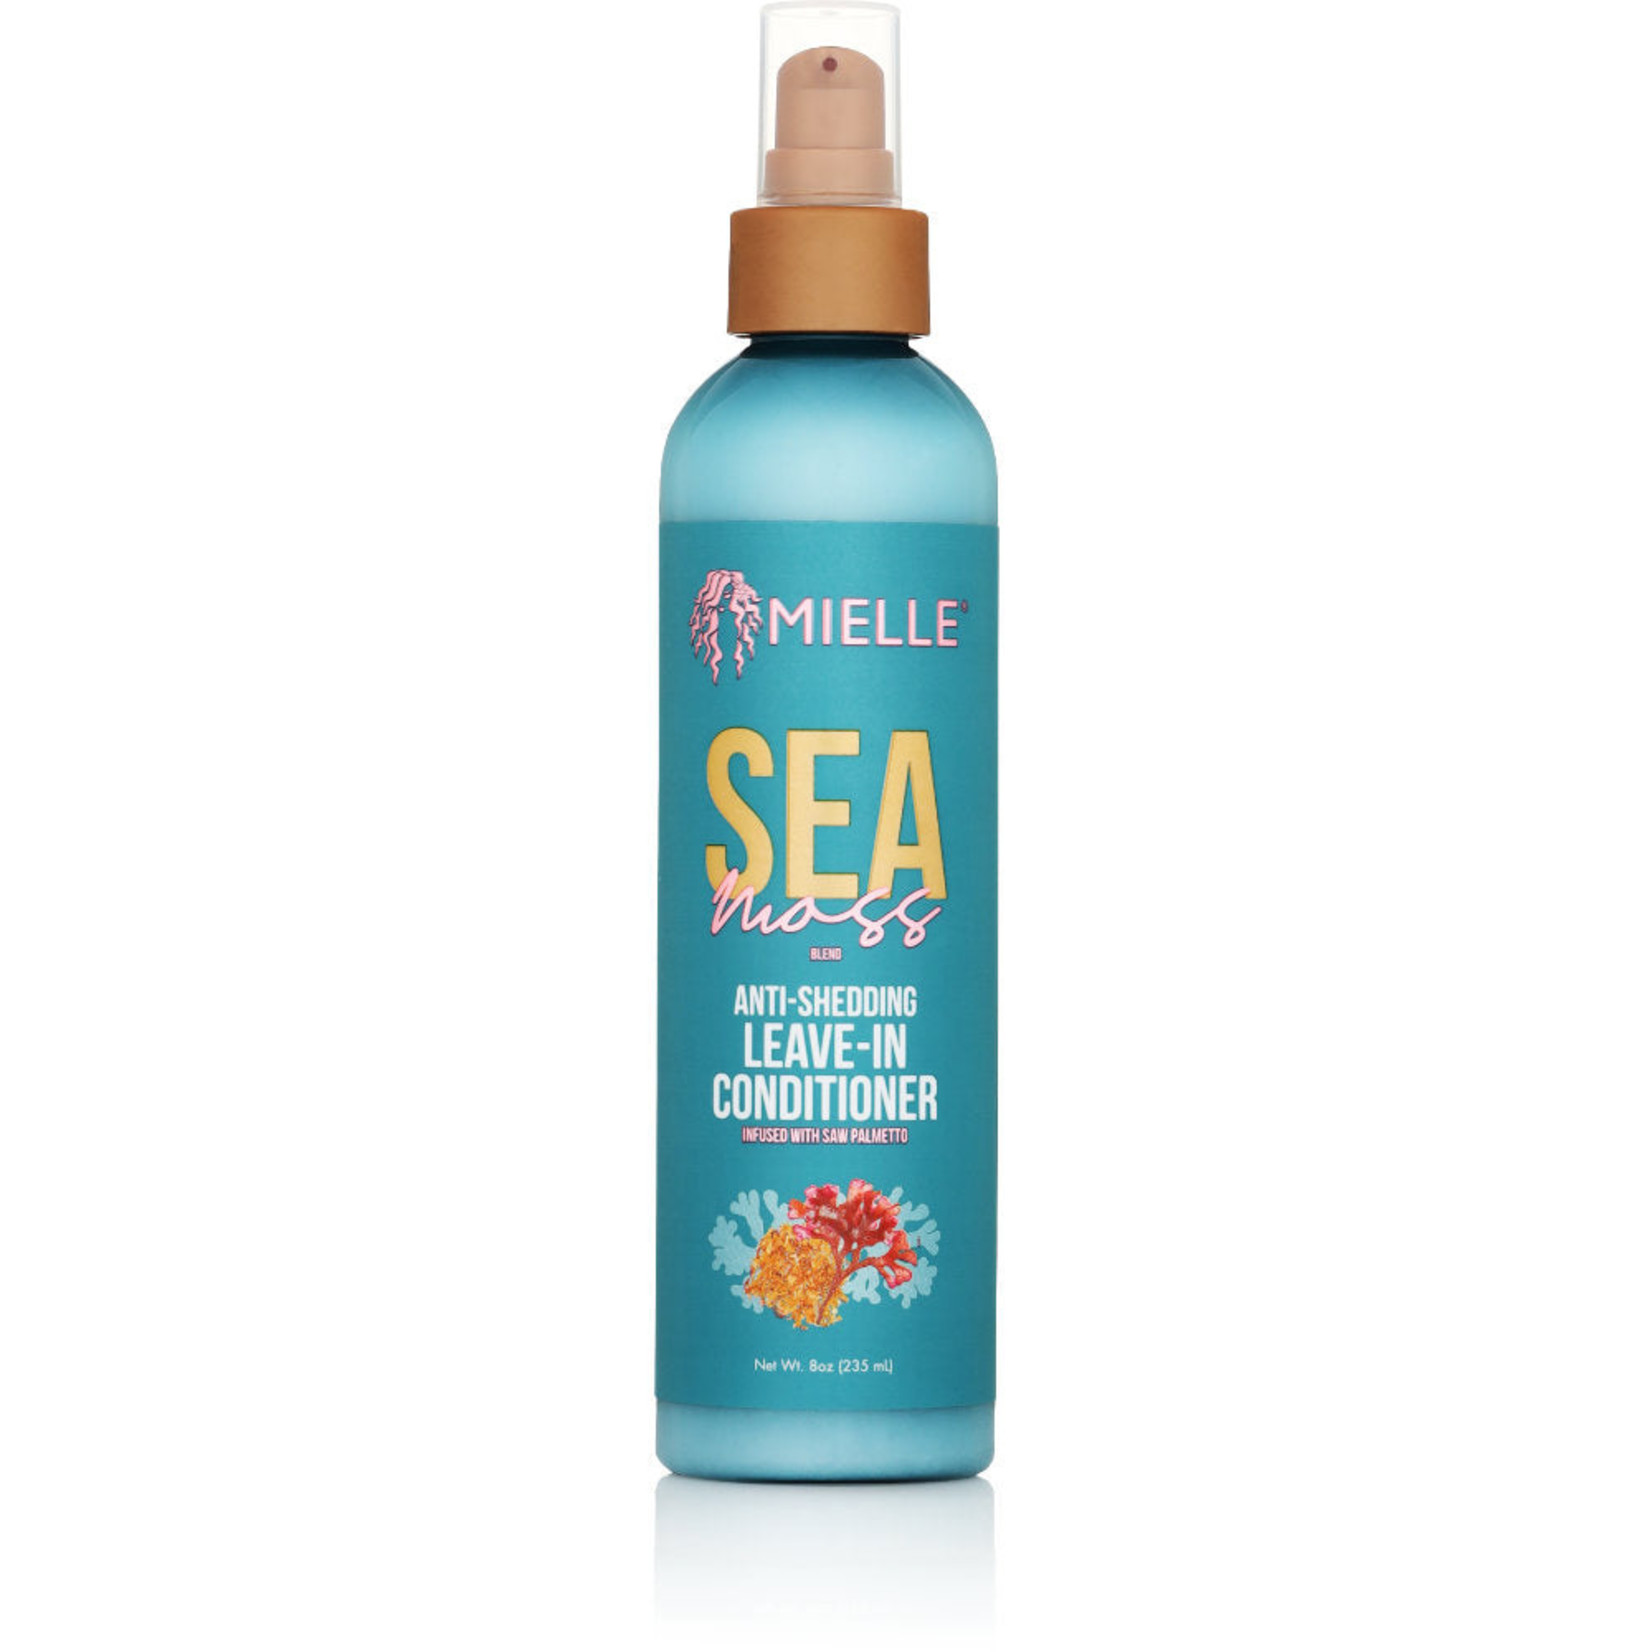 Mielle Organics Sea Moss Anti Shedding Leave-In Conditioner